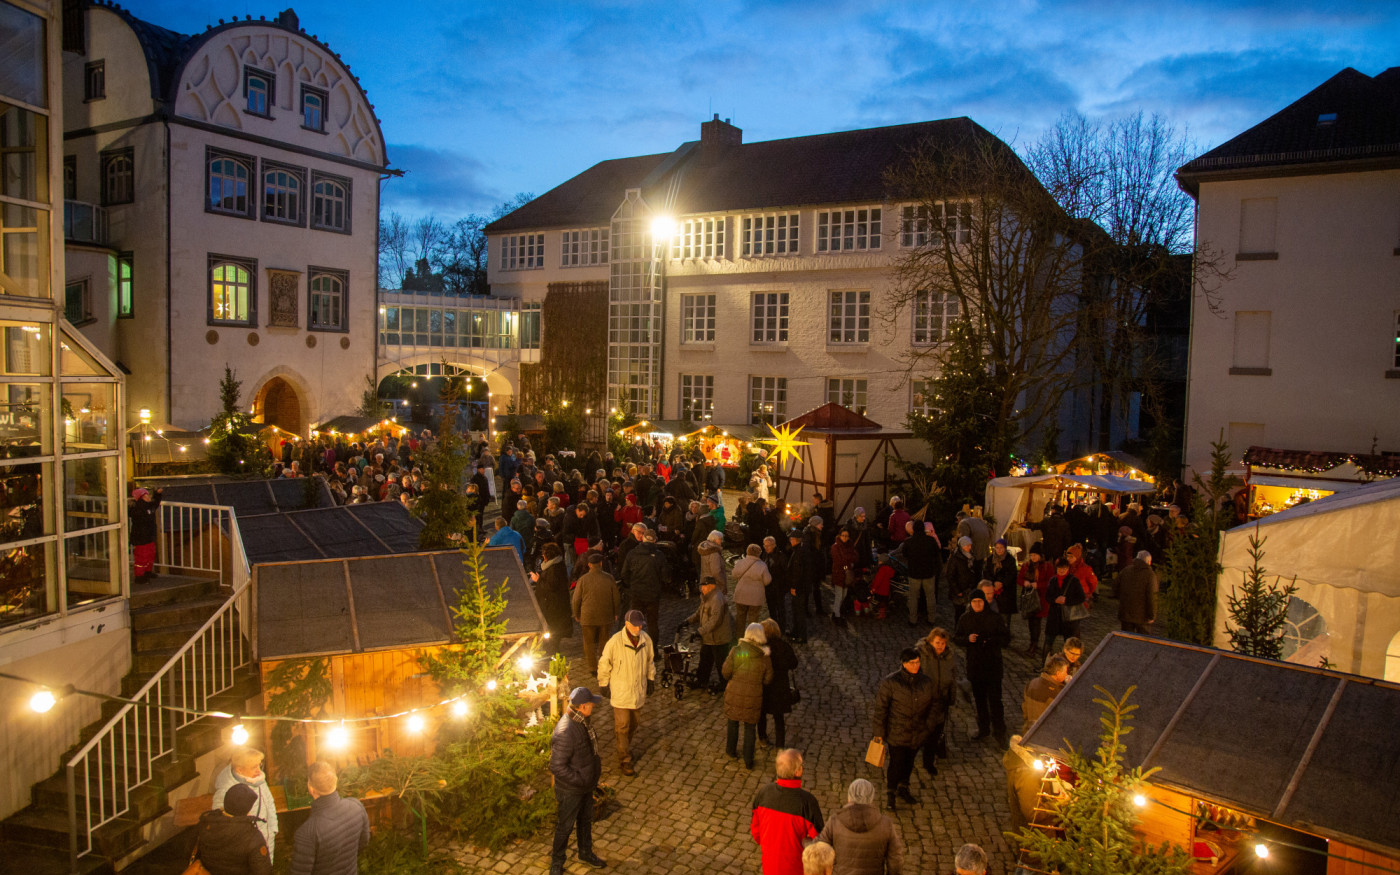 Weihnachtsbummel im Glanz des Schlosses - Am 27. und 28. November findet der Gifhorner Schlossmarkt zum Advent statt